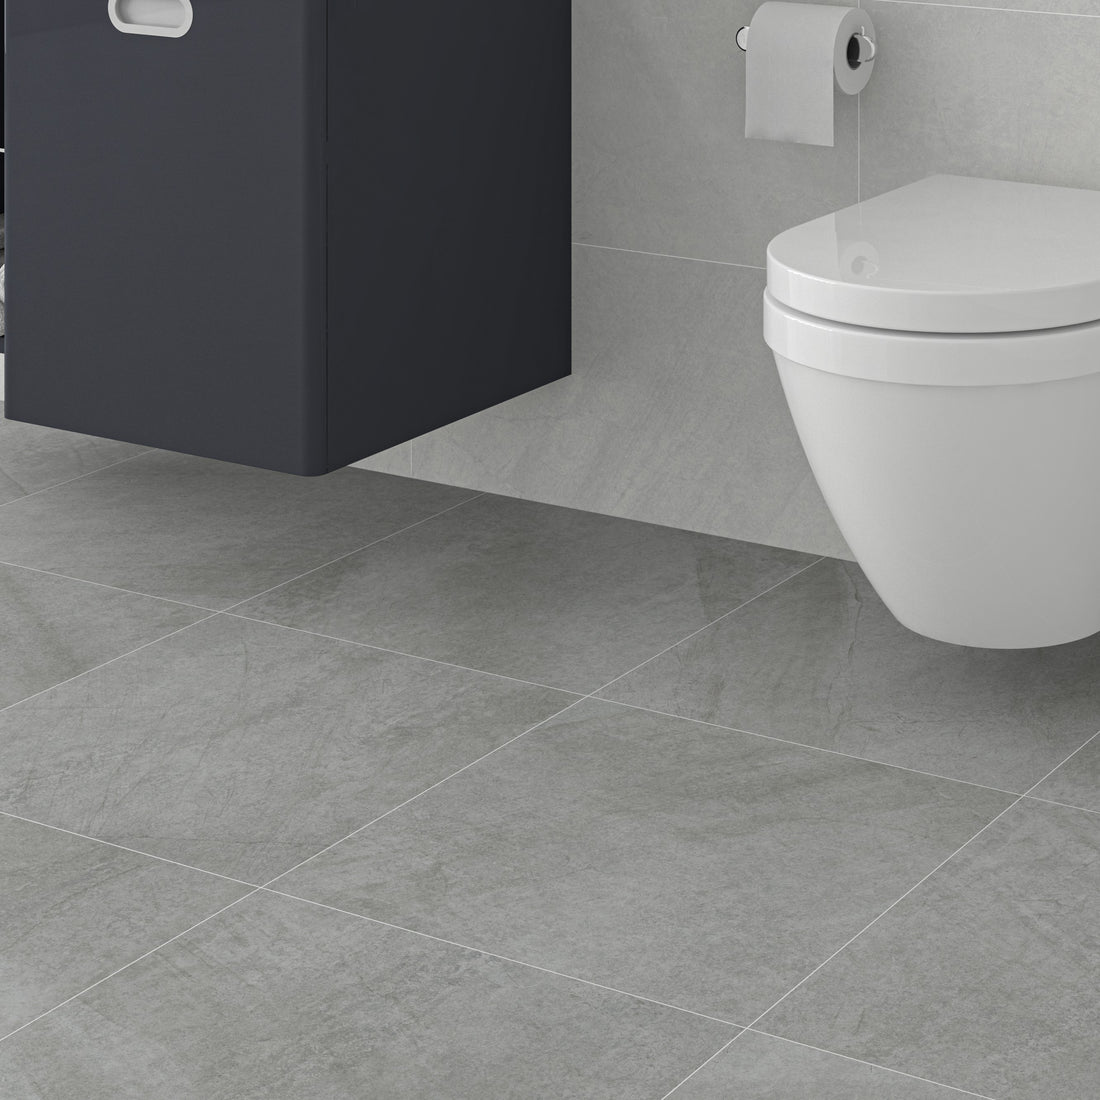 Cosmopol Grey Floor Tile - 45 x 45cm